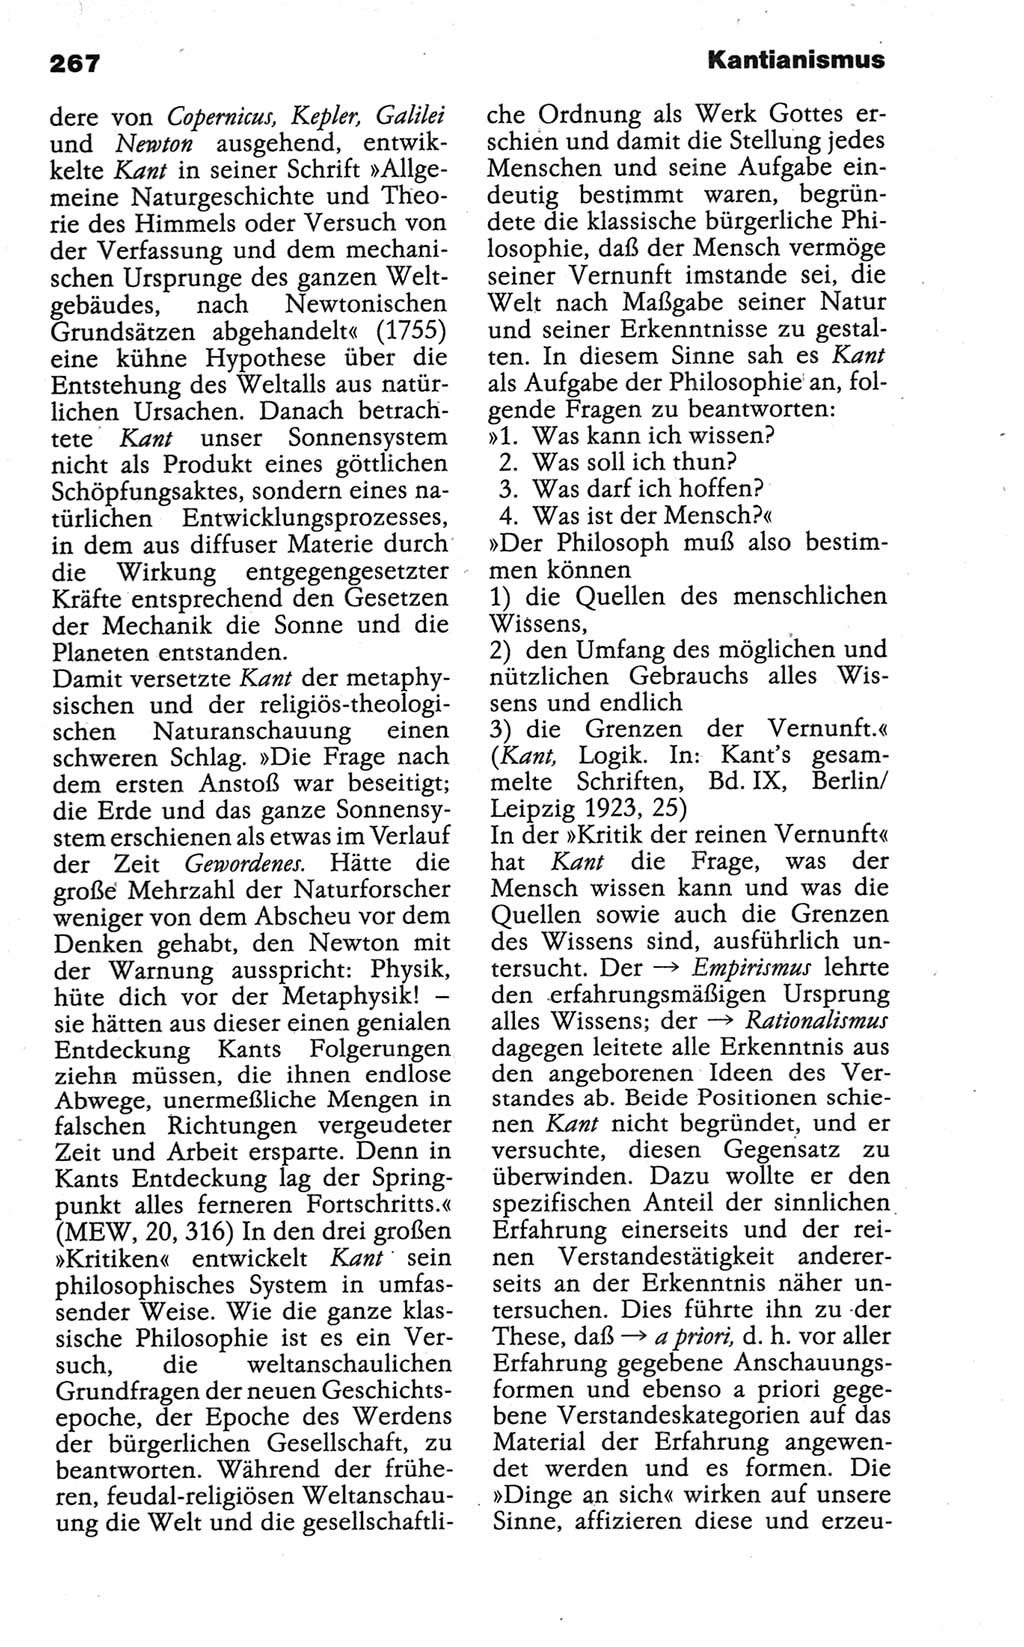 Wörterbuch der marxistisch-leninistischen Philosophie [Deutsche Demokratische Republik (DDR)] 1986, Seite 267 (Wb. ML Phil. DDR 1986, S. 267)